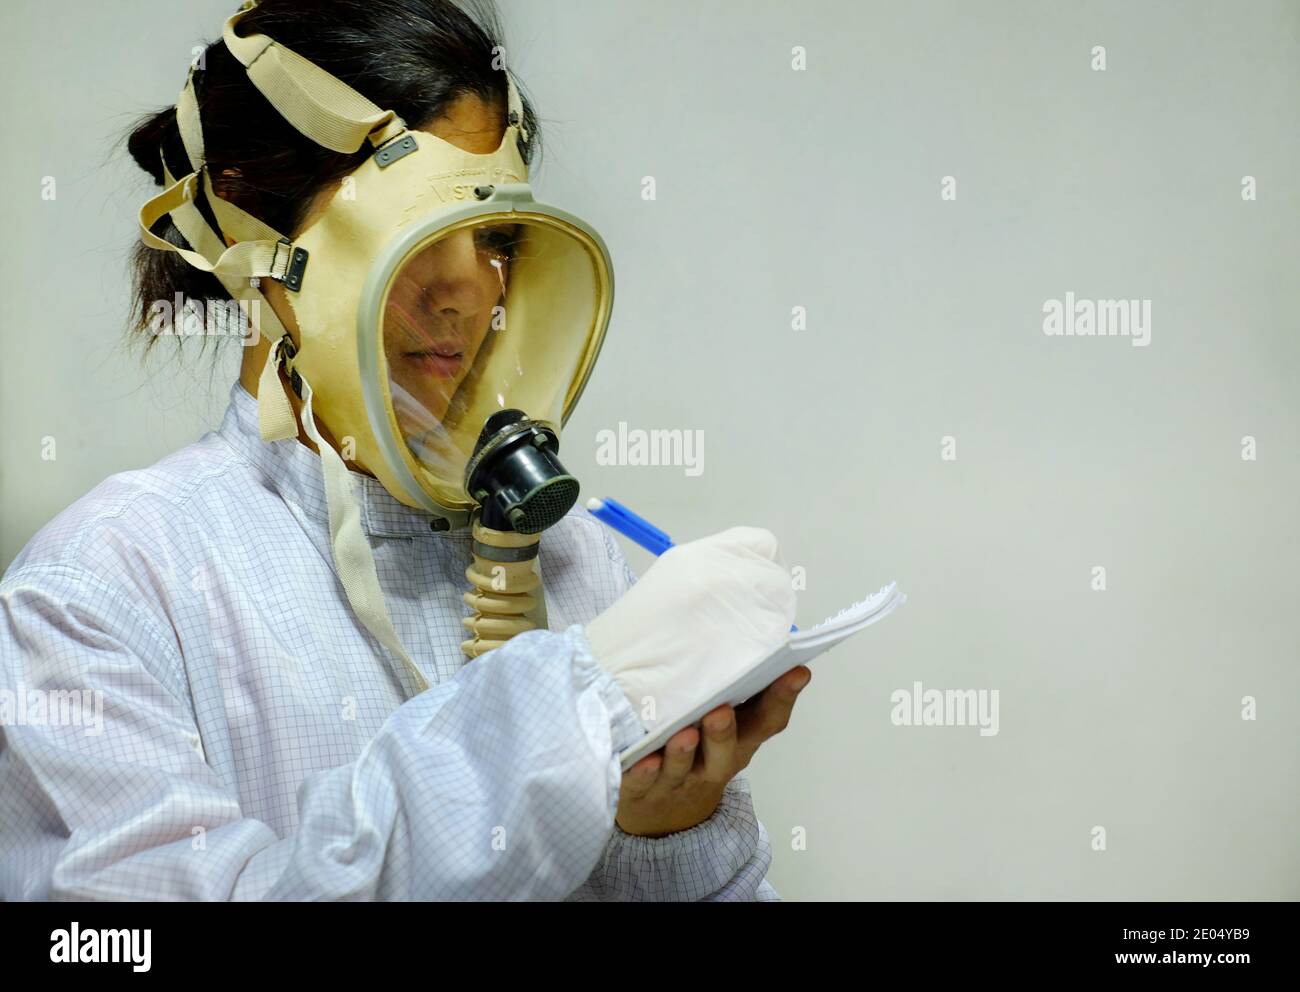 Una mujer con una máscara de oxígeno protectora de cara completa, abrigo  blanco y guantes de goma, preparándose para trabajar en un laboratorio  bioquímico, tomando notas con su pluma A Fotografía de